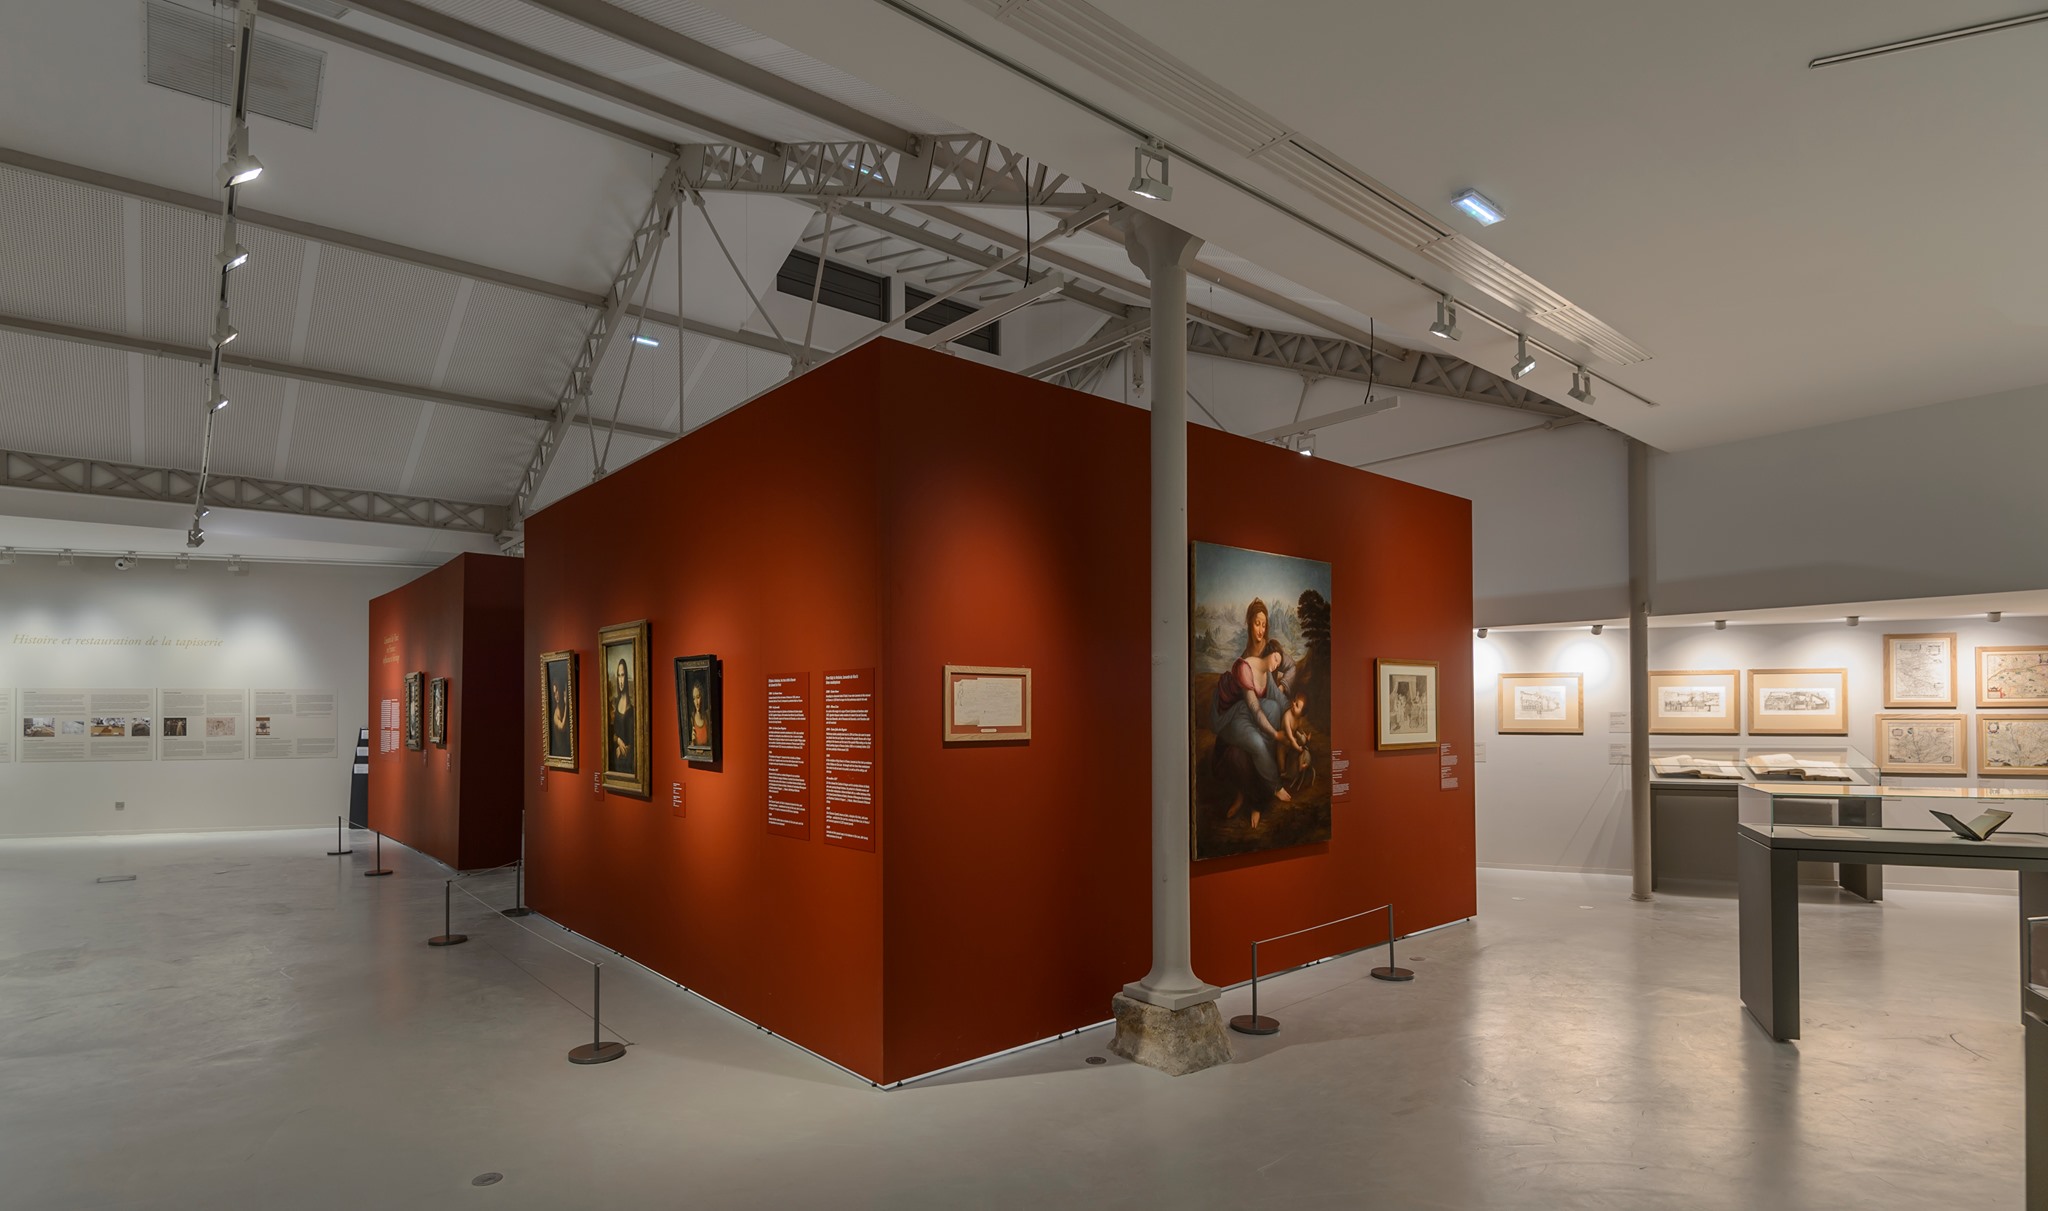 Ausstellungsraum mit Mila-wall Wandmodulen mit roter Oberflächenbeschichtung und Beleuchtungssystemen von MBA